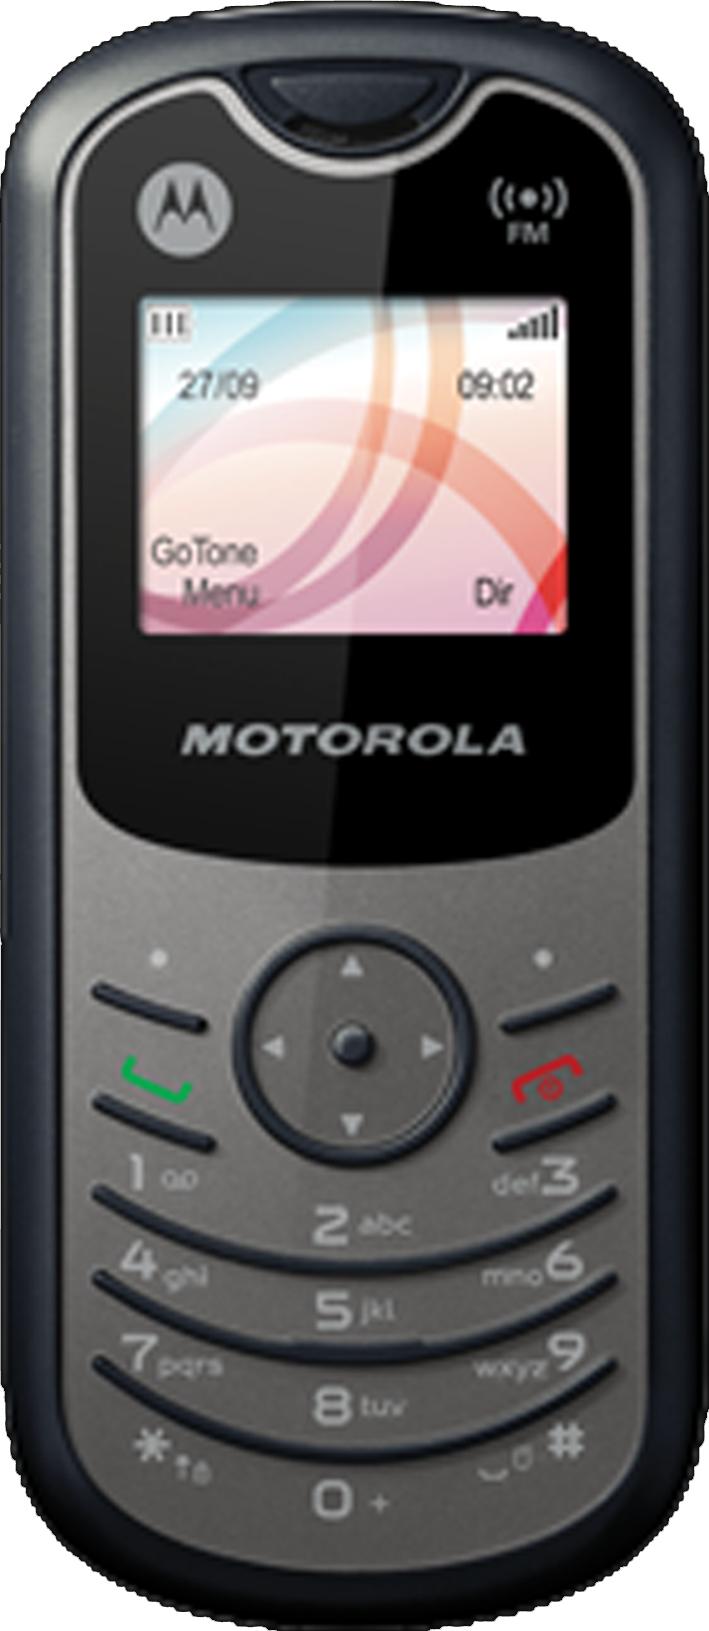 Motorola WX160 Actual Size Image